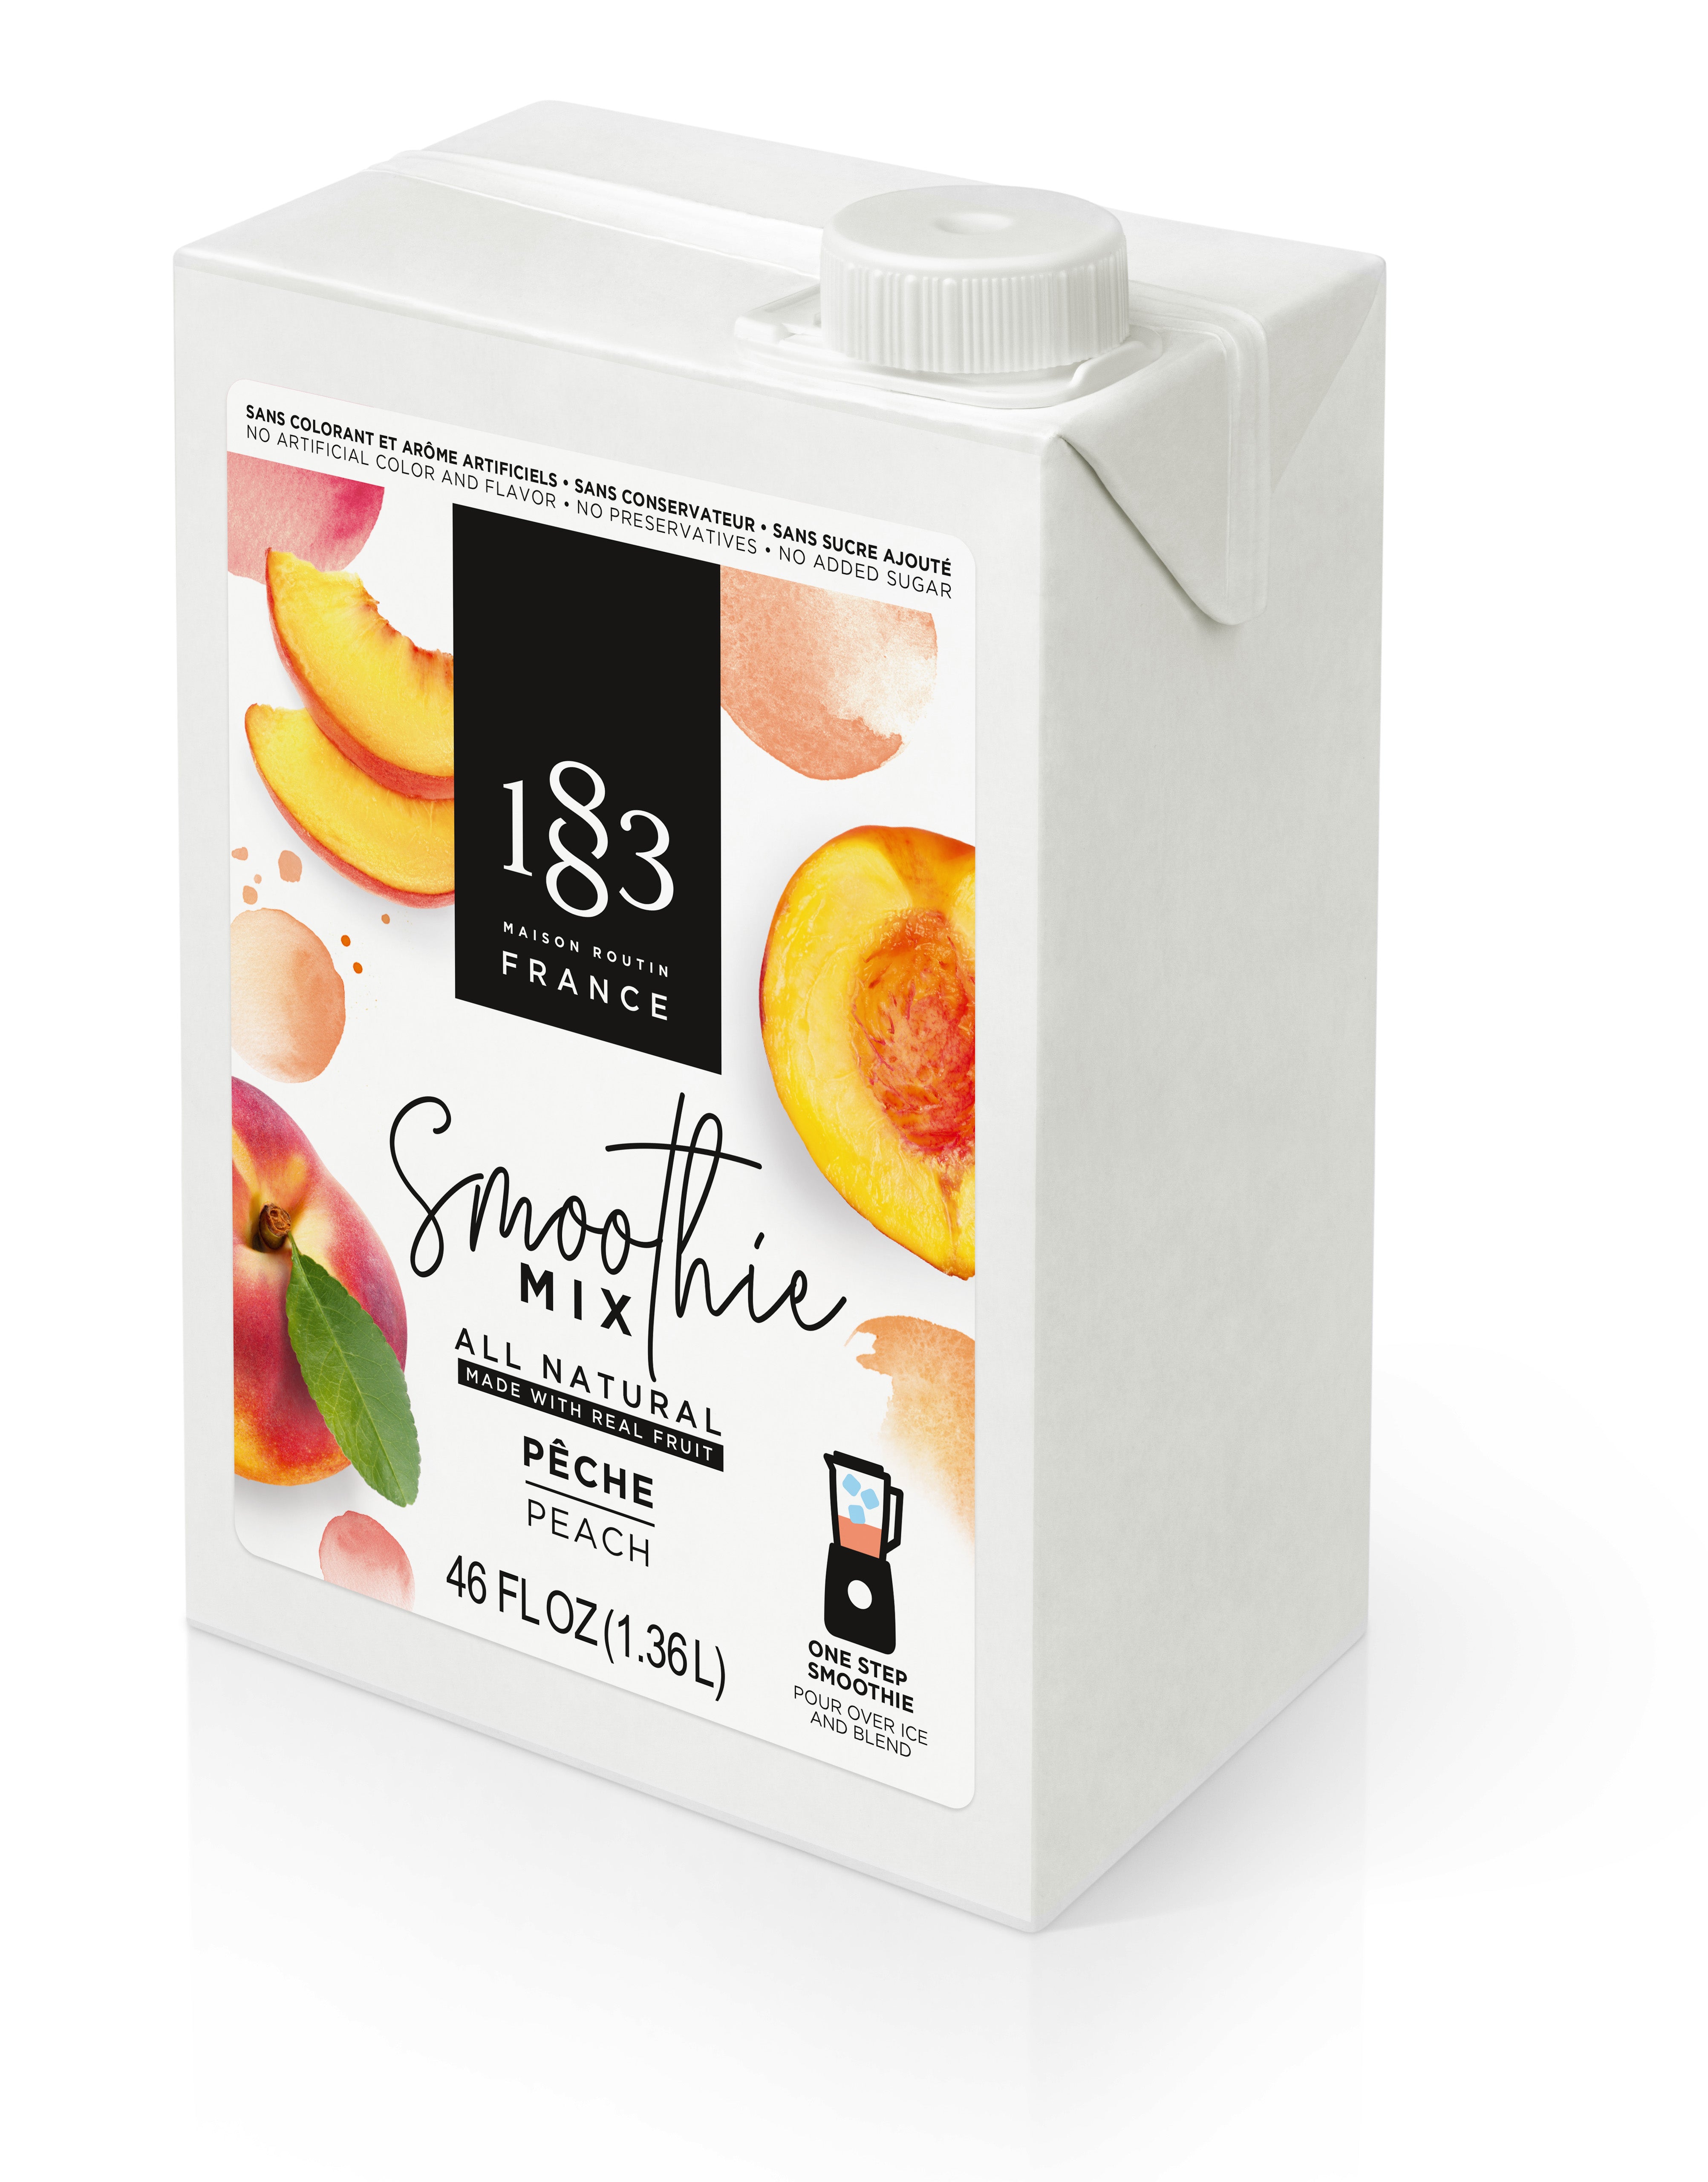 1883 Smoothie Mix - 46oz Carton: Peach